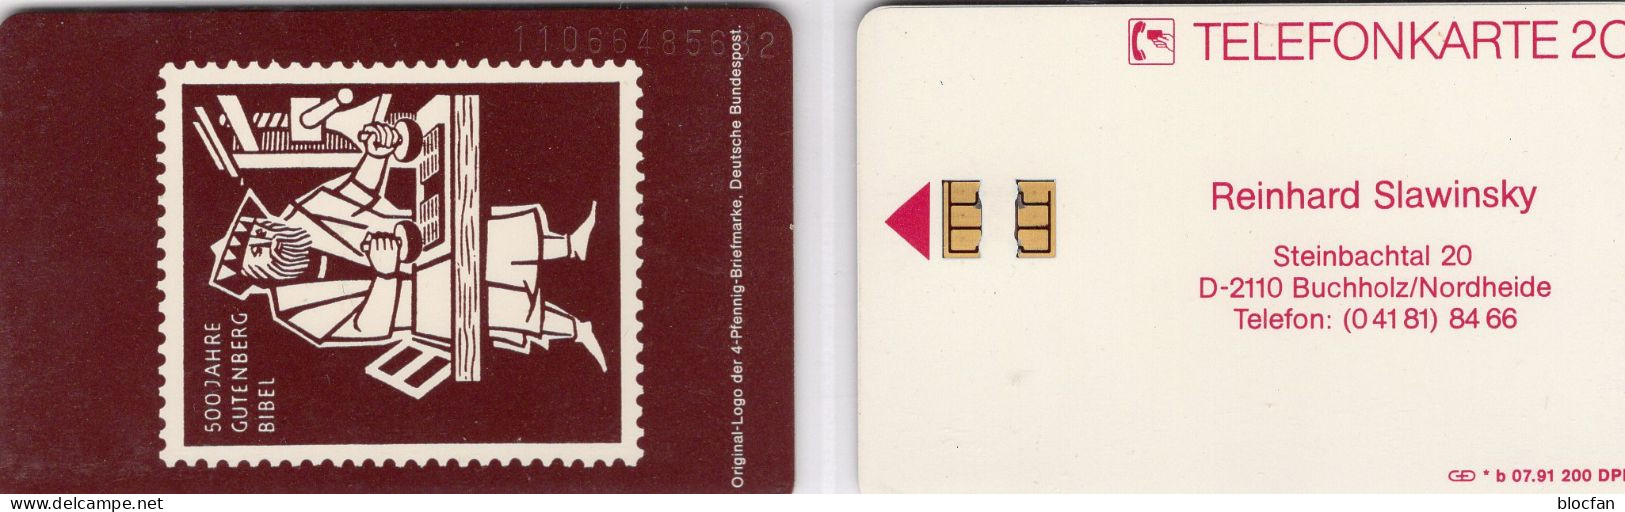 Gutenberg-Bibel TK N * B 07.1991(K350) 200Expl.** 90€ Buchdruckerei Slawinski In Buchholz BRD #198 TC Stamp On Phonecard - V-Series: VIP-und Visitenkartenserie